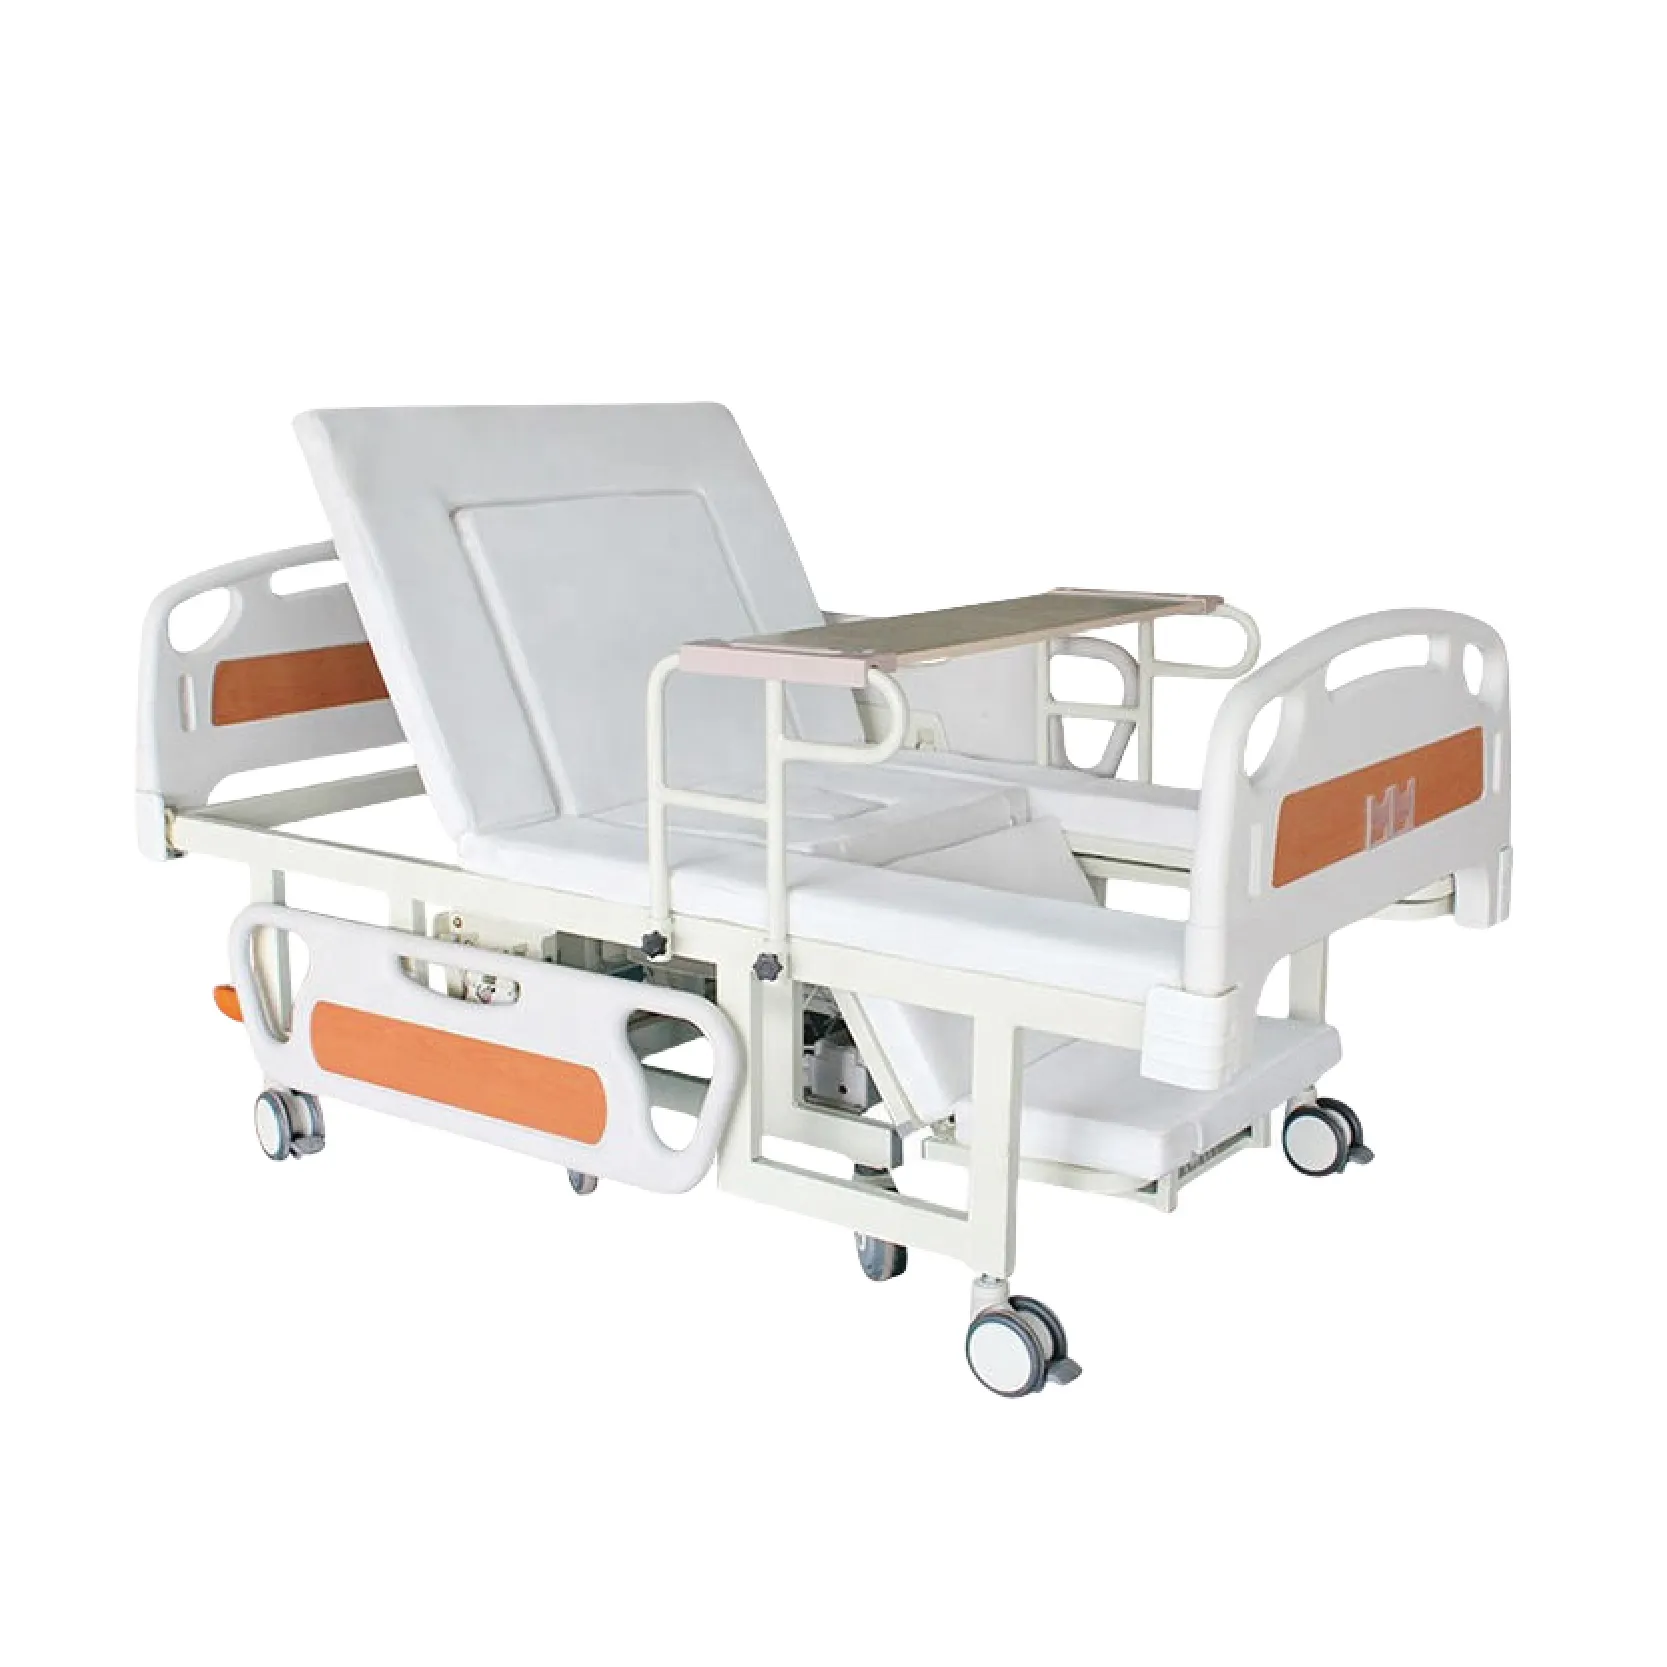 Suministro directo de cama de hospital eléctrica para sala de hospital, suministros de equipo, cama médica para pacientes, habitación de hospital